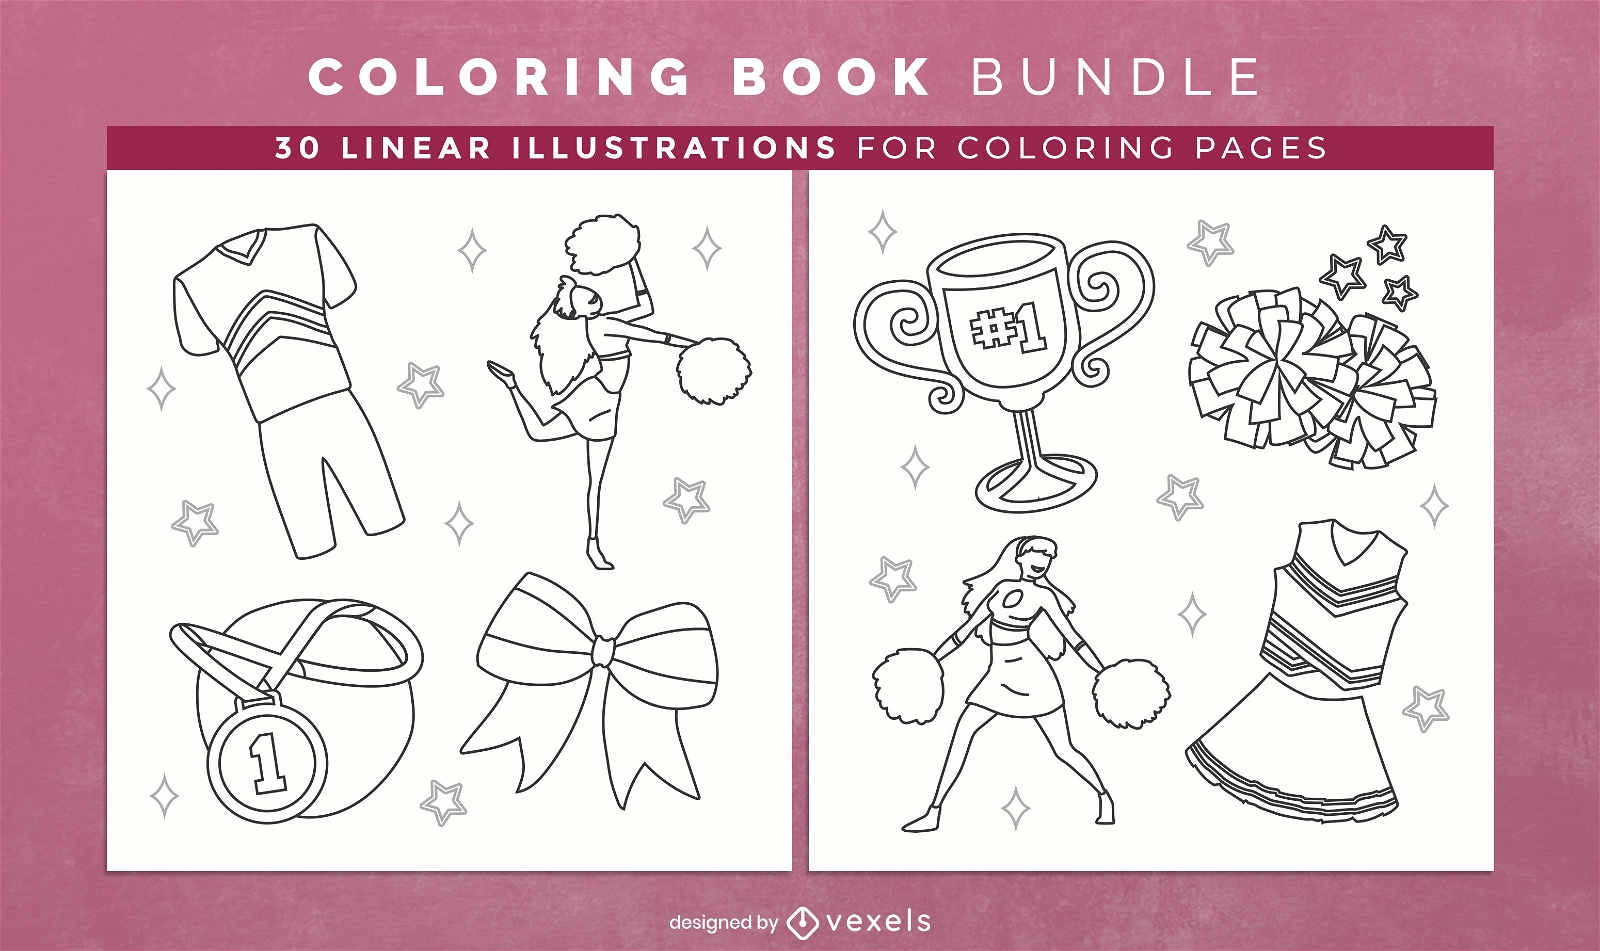 Cheerleader coloring book interior design